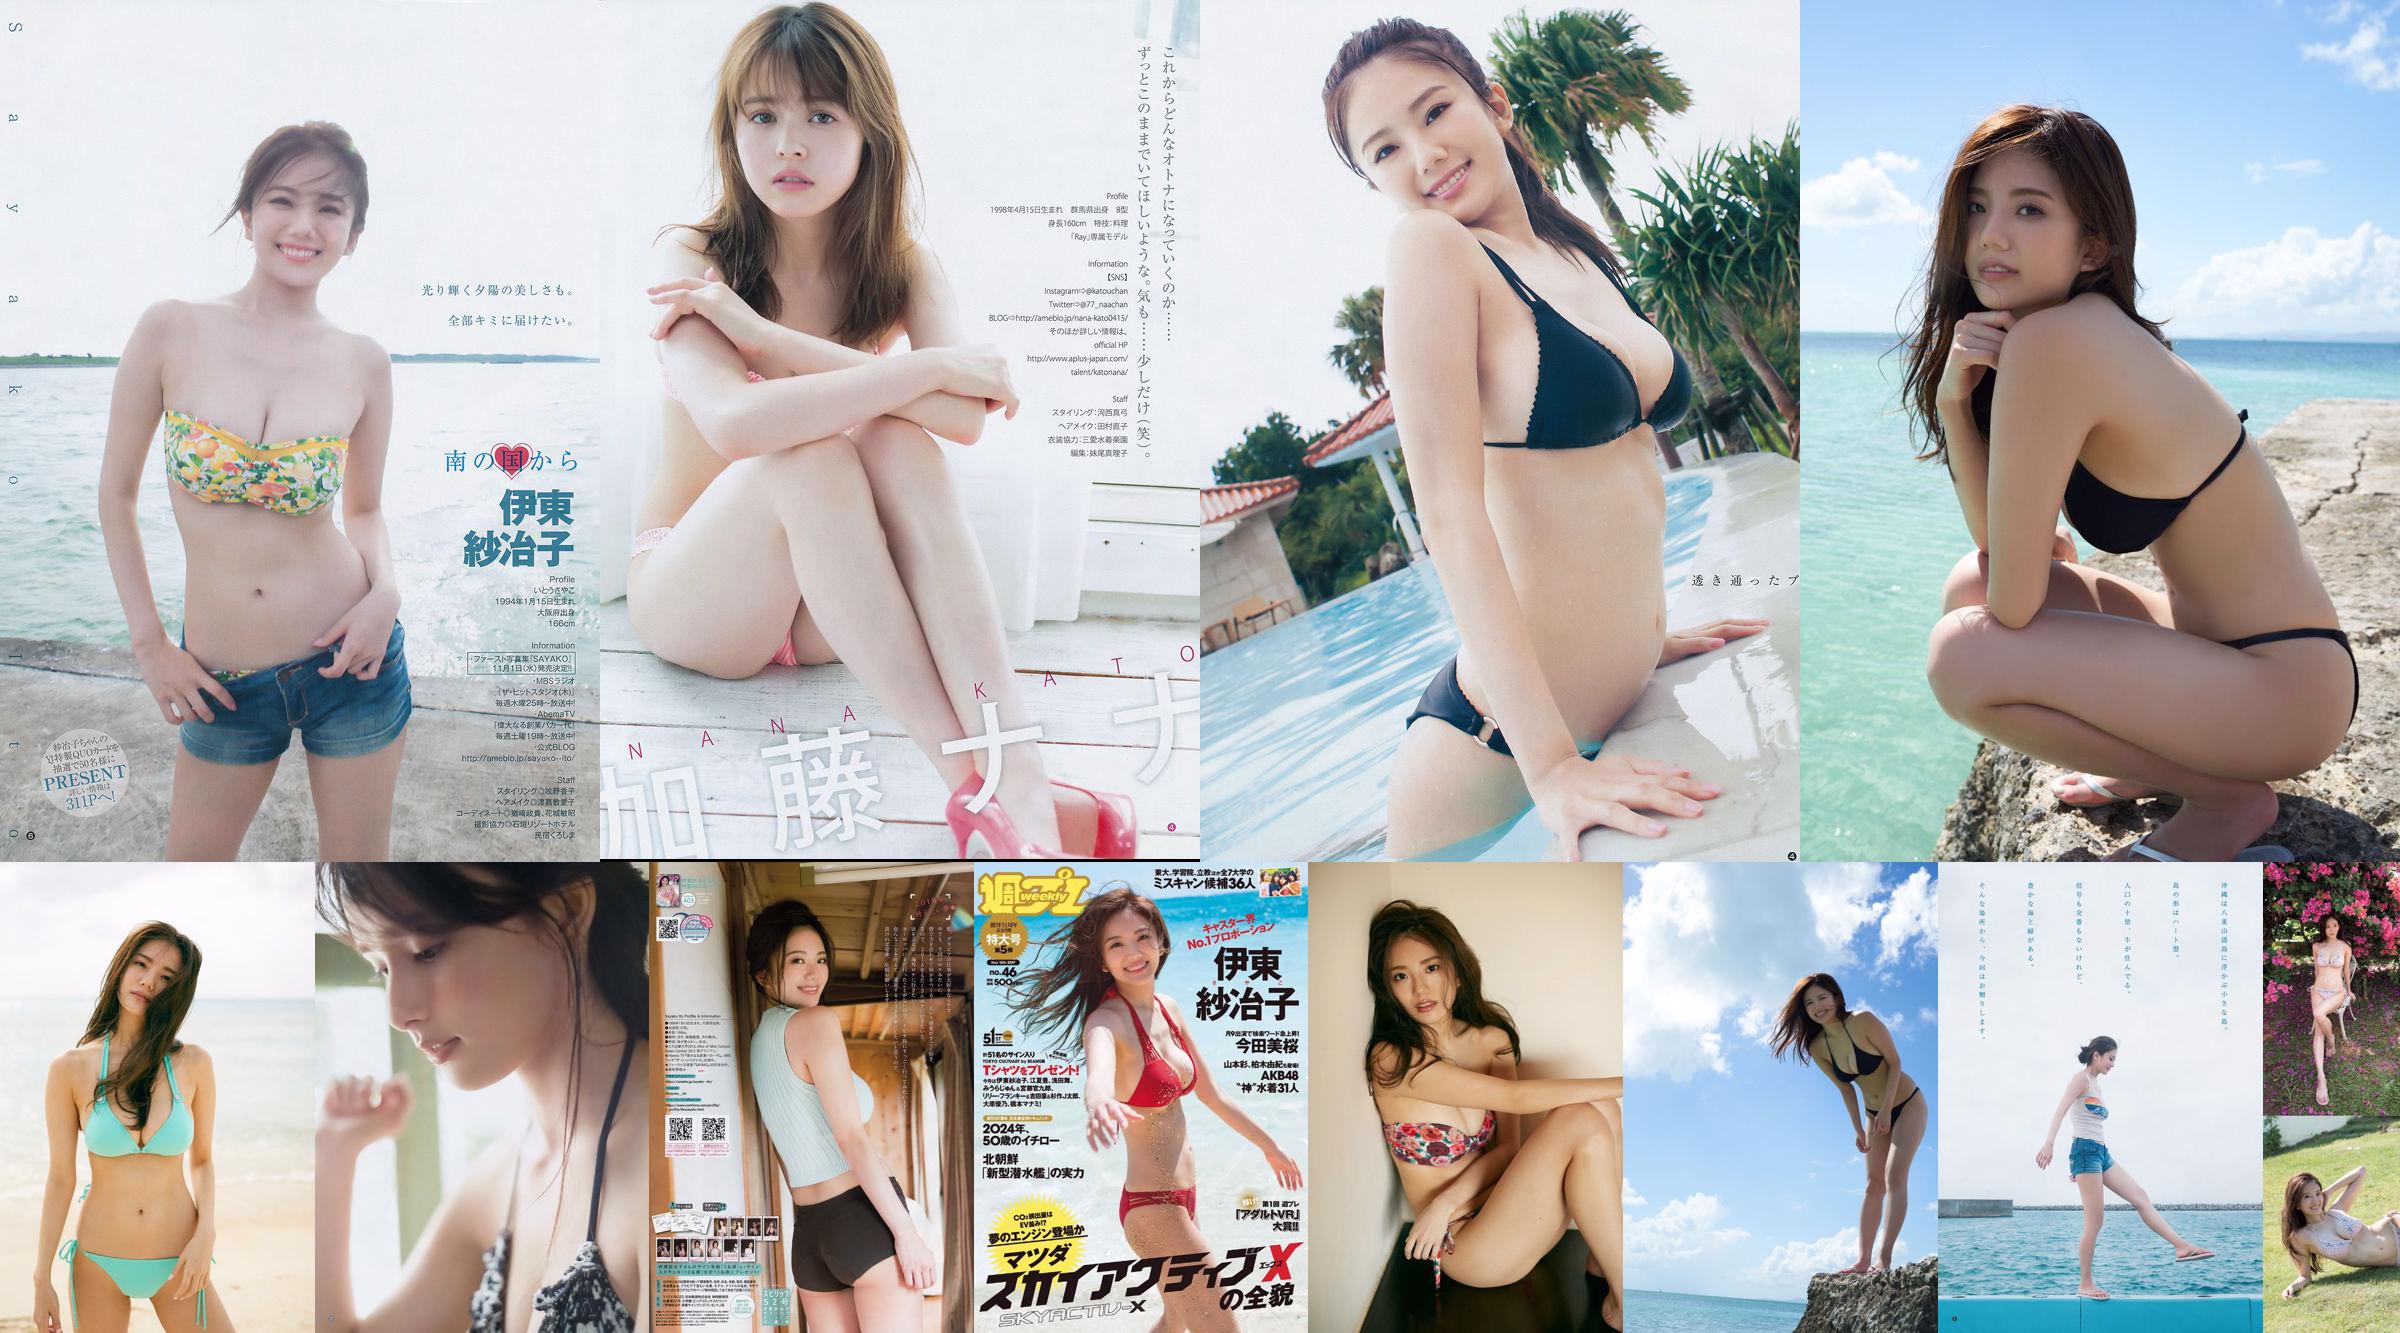 Ito Sayeko, Mima Reiko, Sugimoto Yumi, Sato Reina, Yoshiki りさ Toyama Akiko, Naninao [Weekly Playboy] 2016 No.36 Photo Magazine No.c7fb1f Page 3